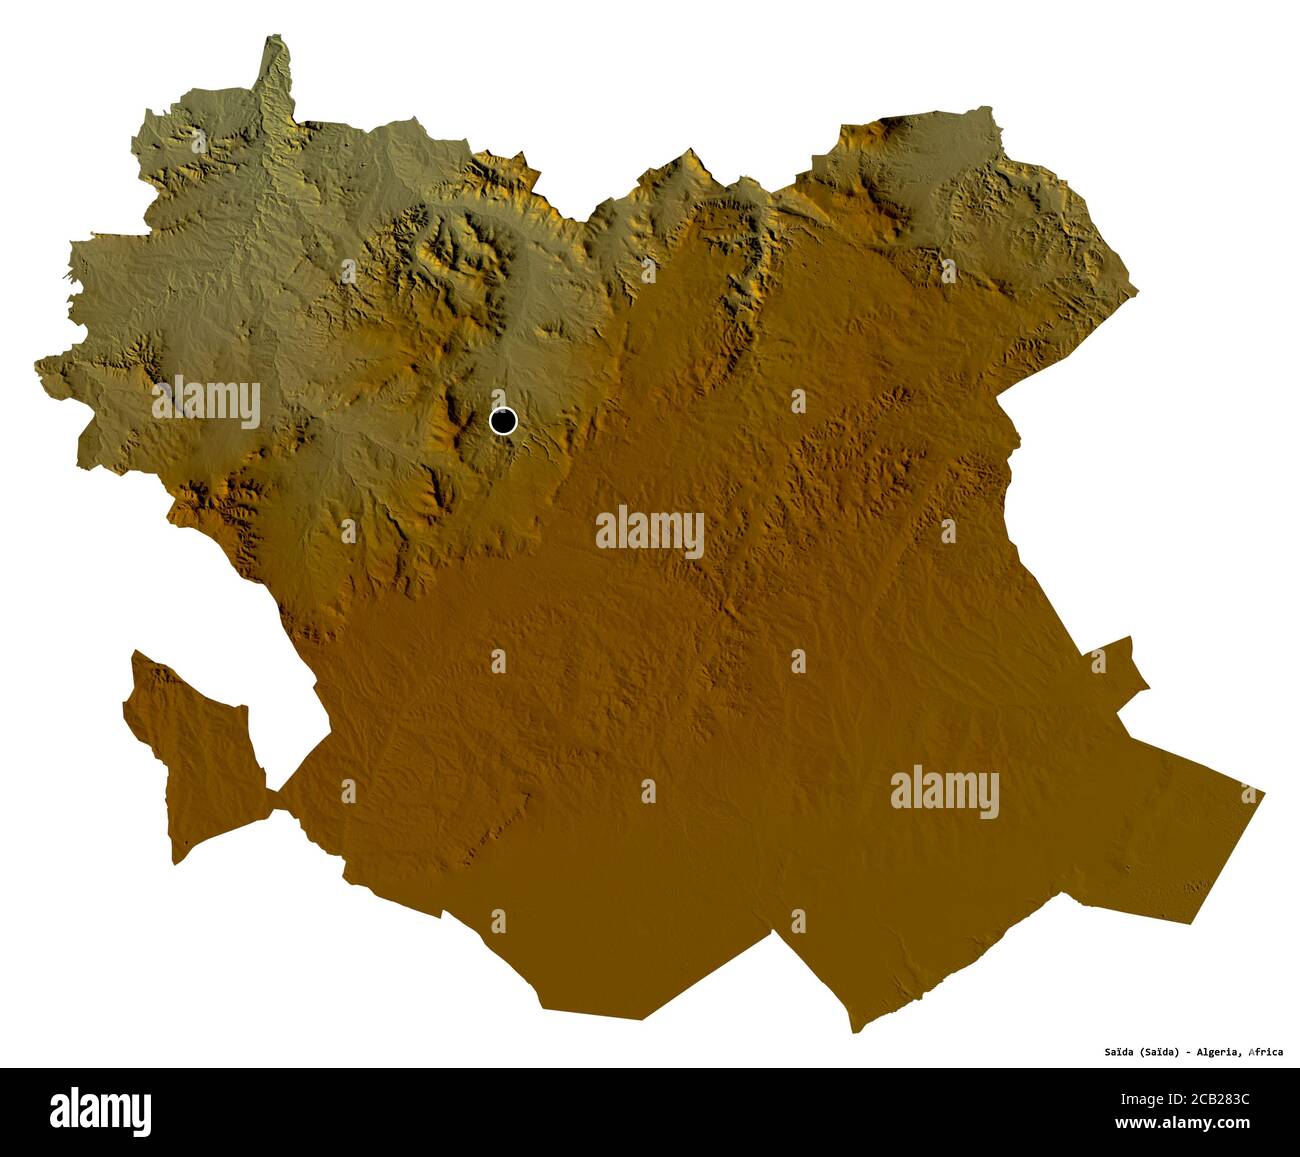 Forme de Saïda, province d'Algérie, avec sa capitale isolée sur fond blanc. Carte topographique de relief. Rendu 3D Banque D'Images